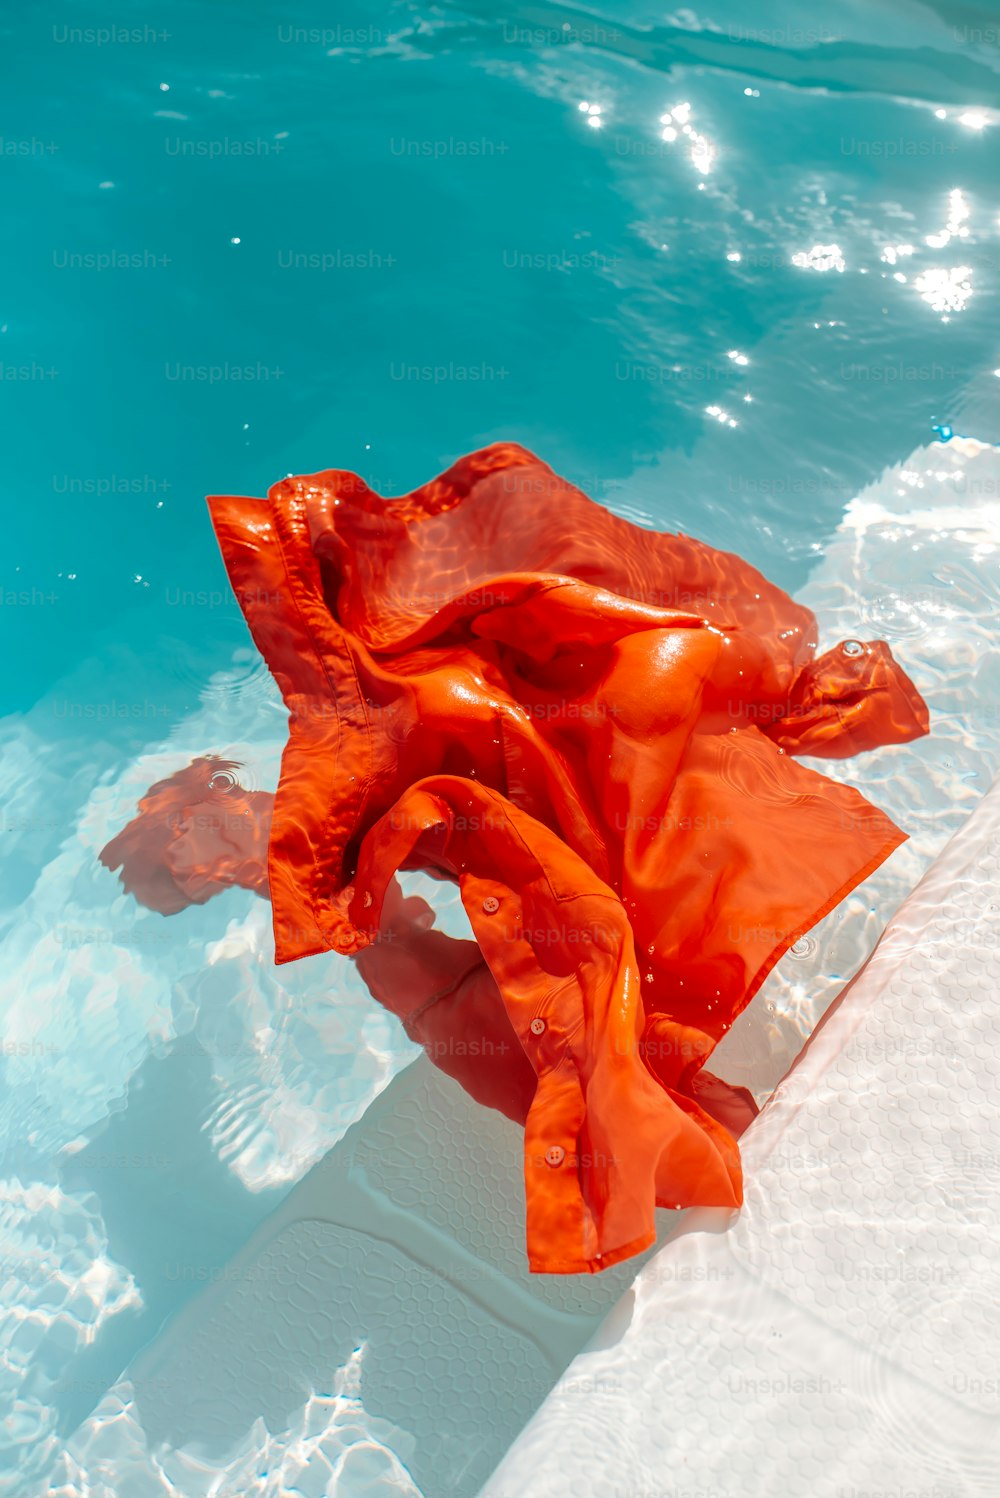 un panno arancione che galleggia in una pozza d'acqua